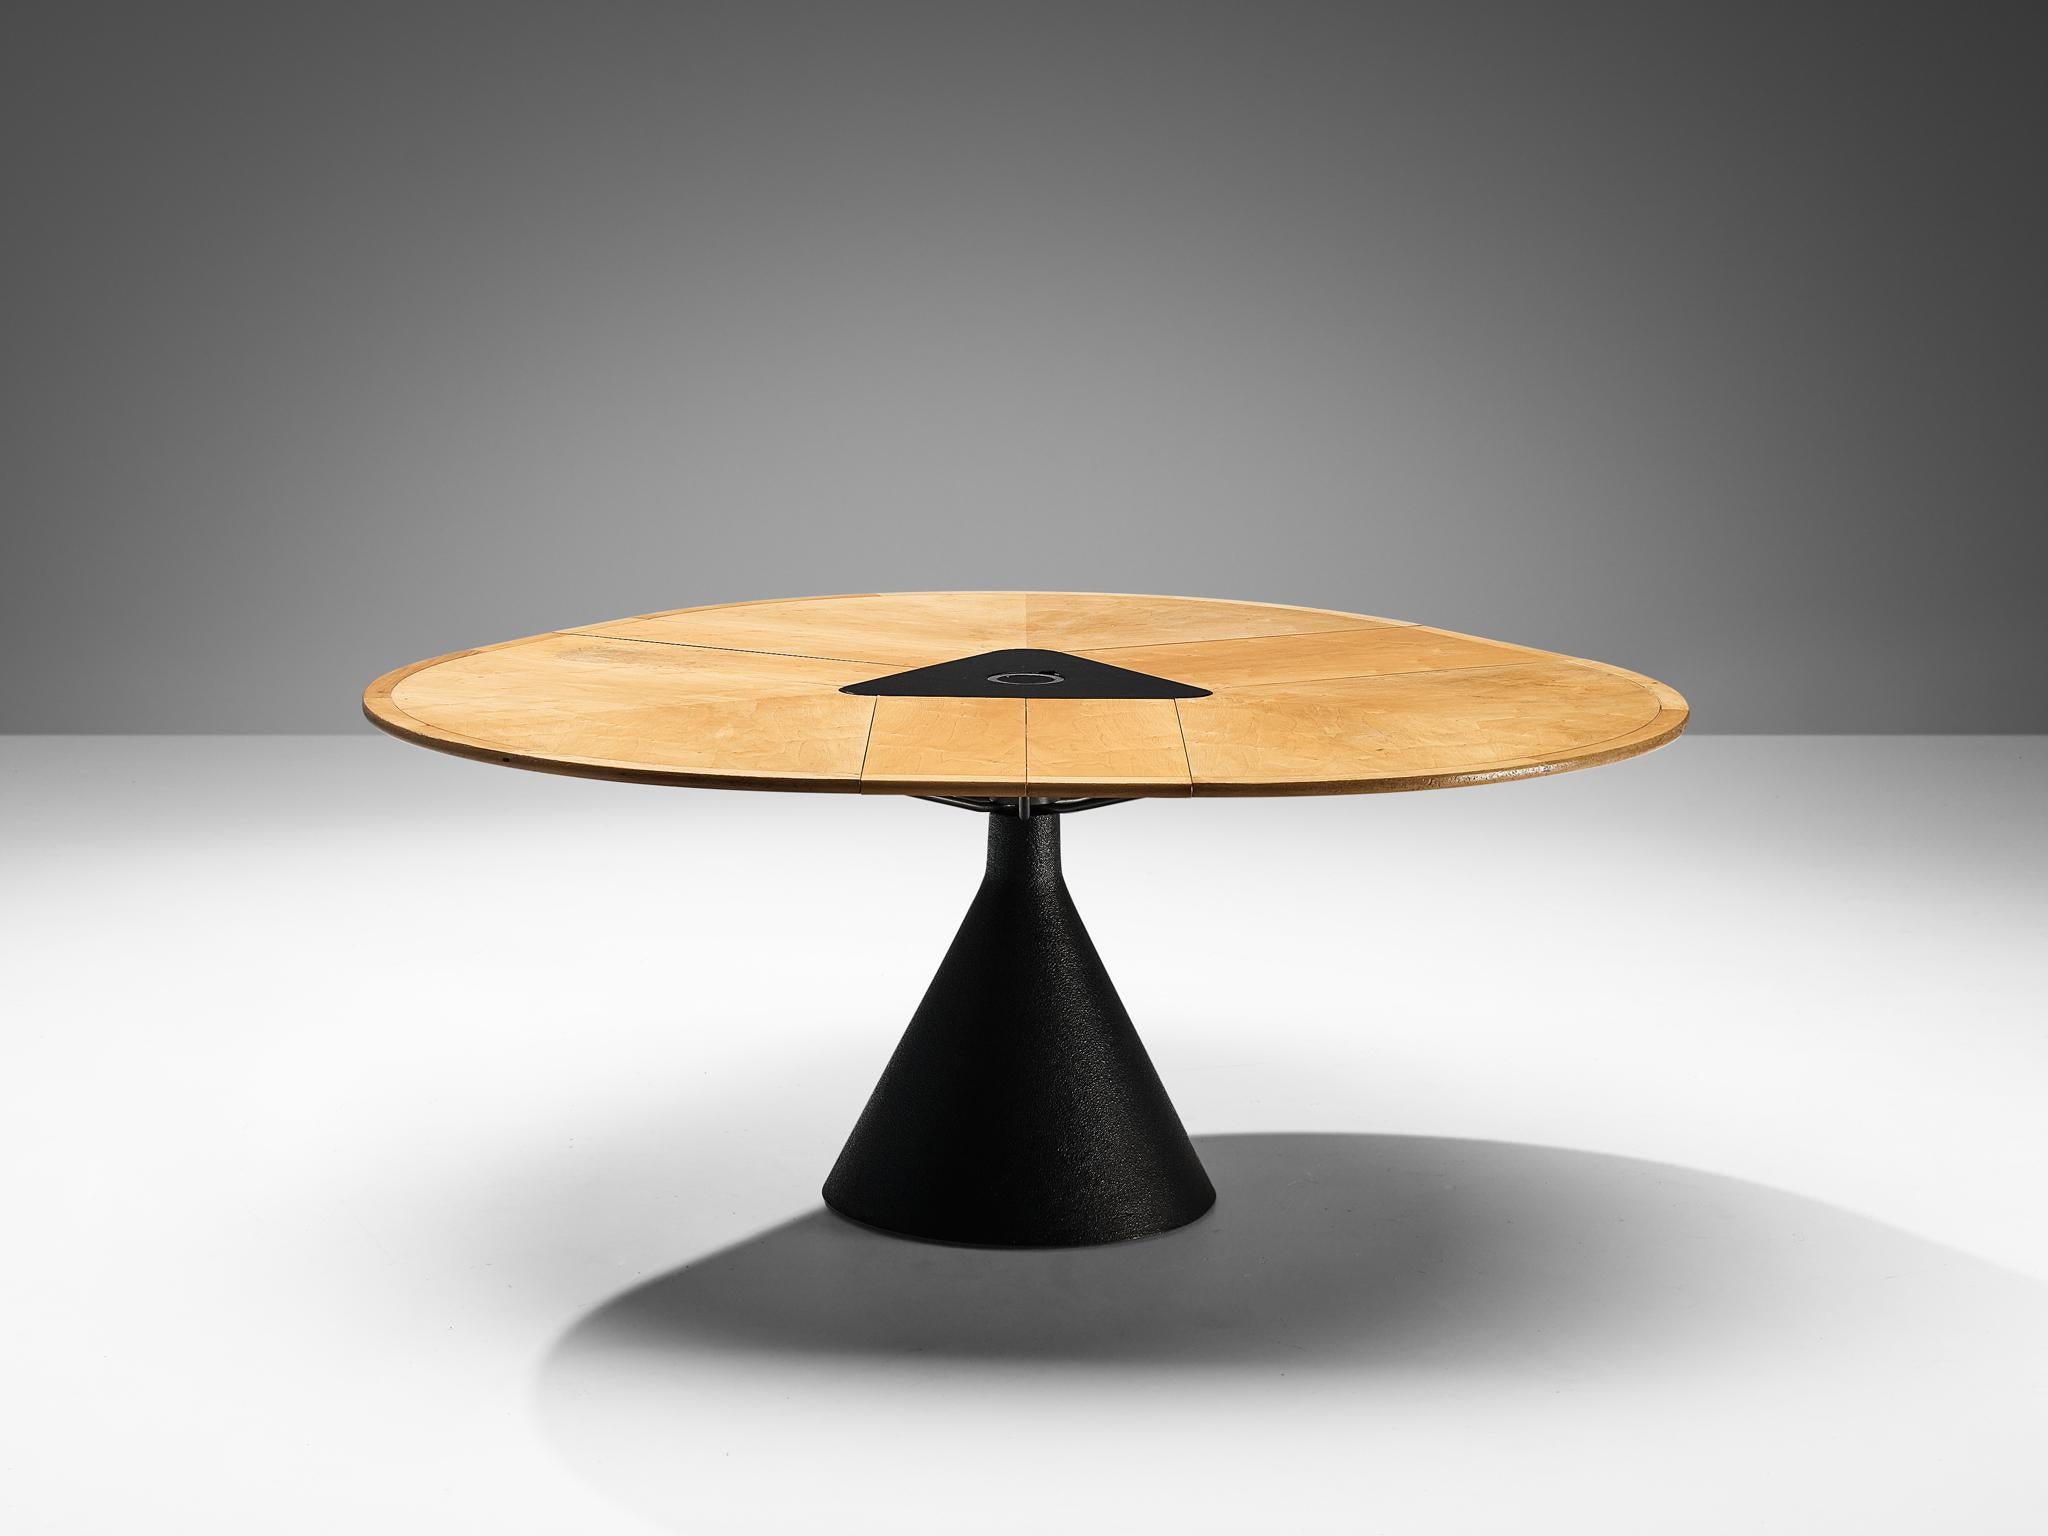 Francesco Fois pour Bernini, table de salle à manger 'Click' érable, métal, Italie, 1986
 
Le modèle de table Eleg, conçu par Francesco Fois pour Bernini en 1986, témoigne d'une élégance fonctionnelle. Il repose sur une base métallique en forme de